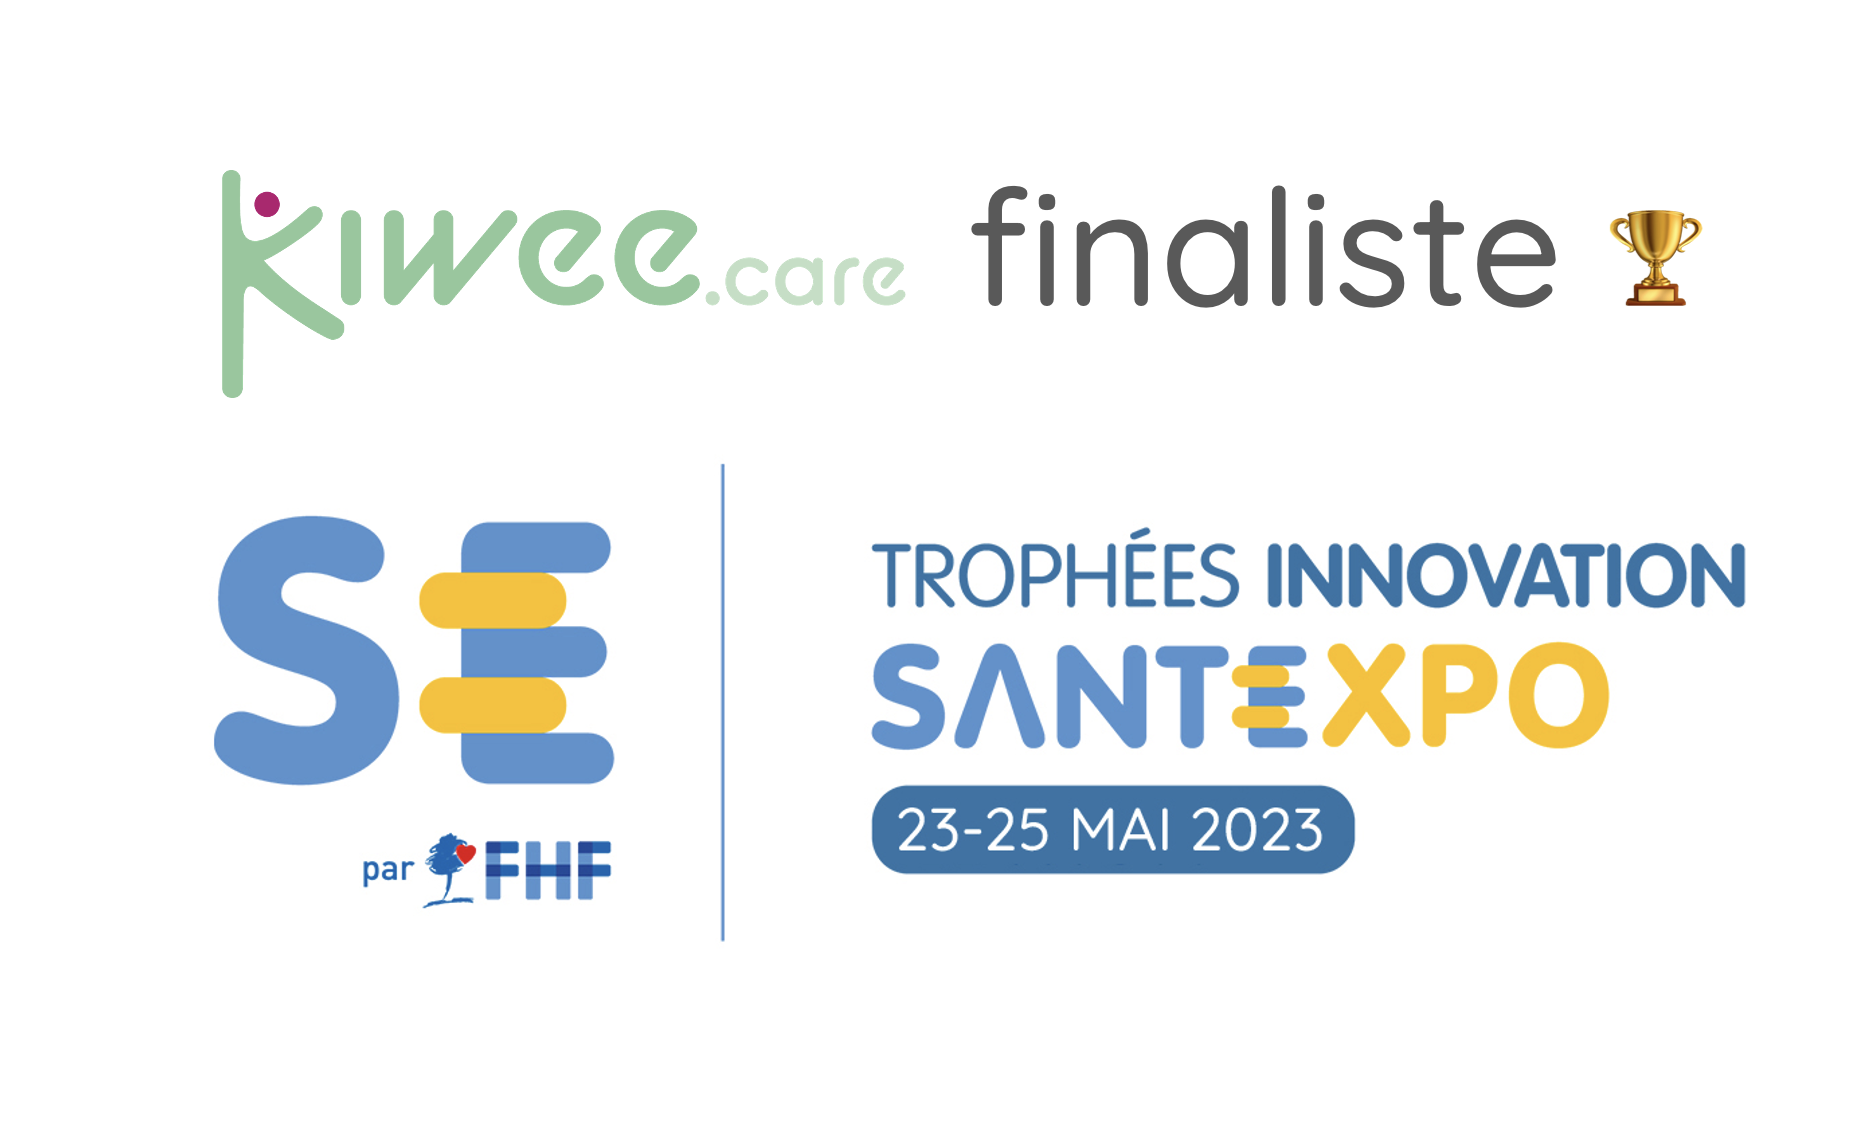 Kiwee.care finaliste des trophées Innovation Santexpo 2023